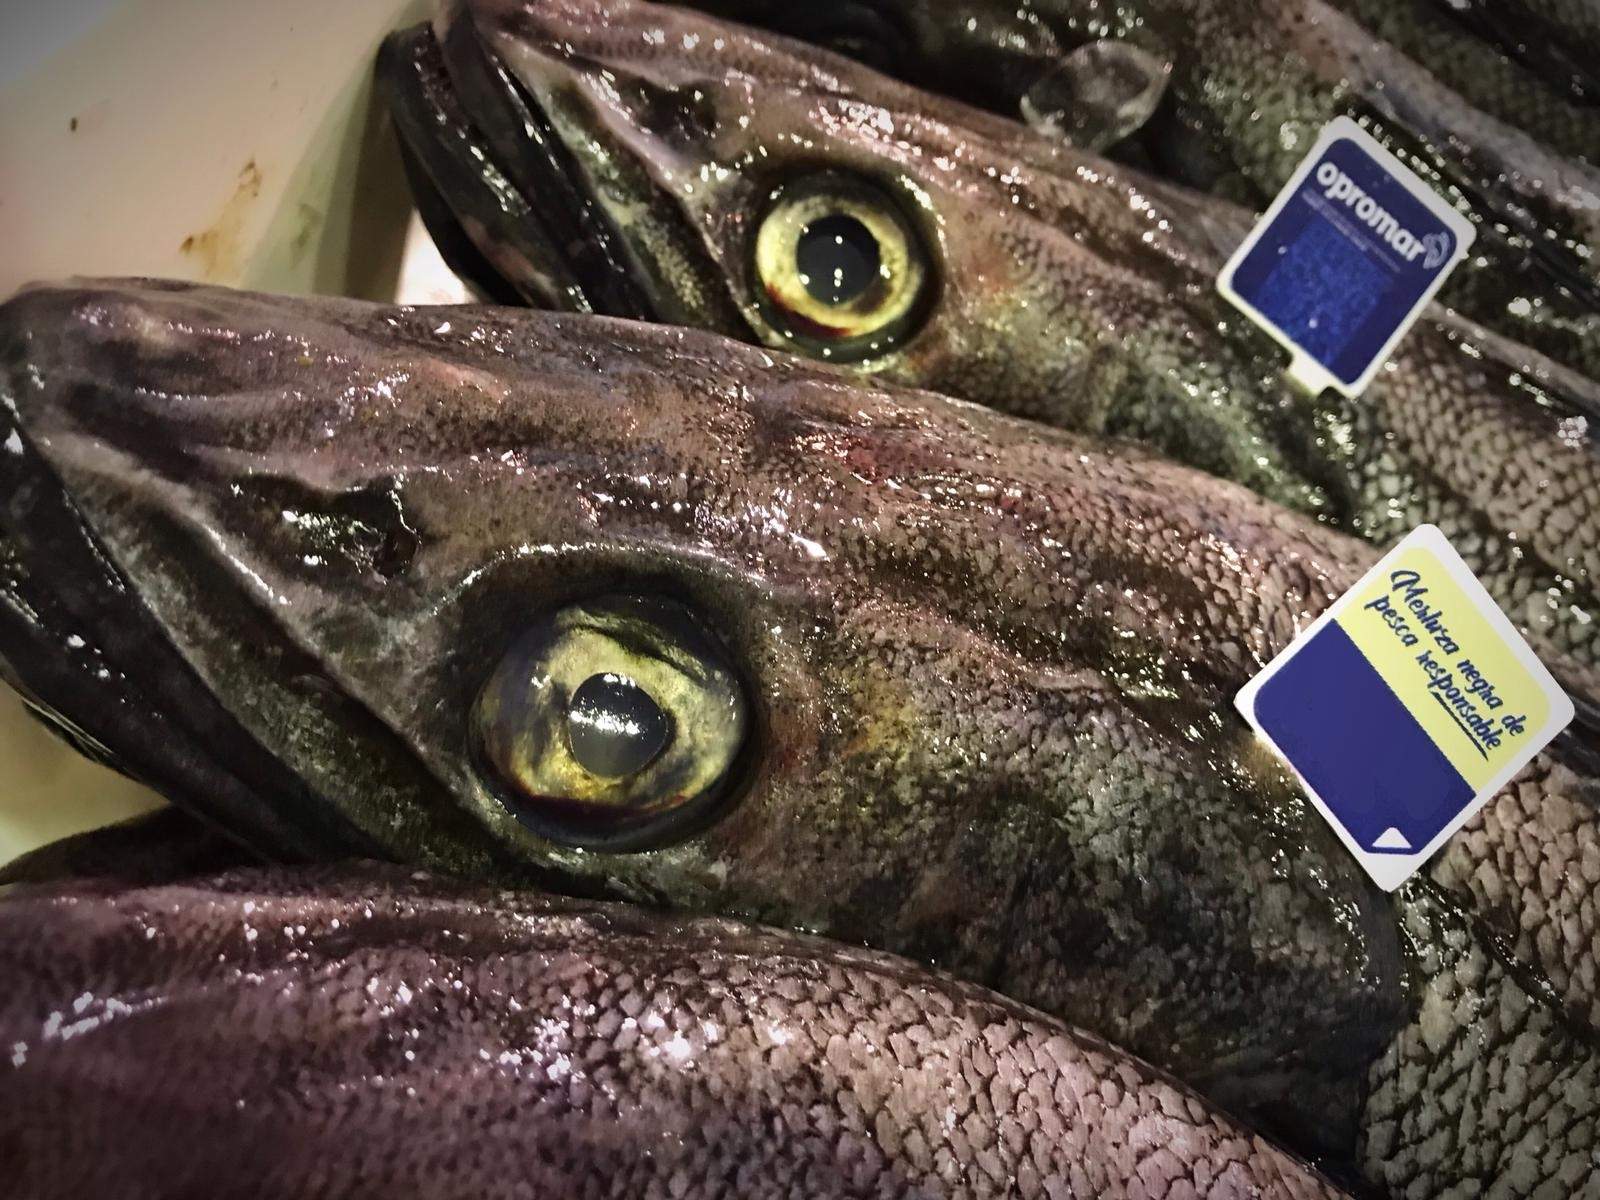 Alerta sanitaria "grave" en el estado español por un pescado con anisakis procedente de Marruecos